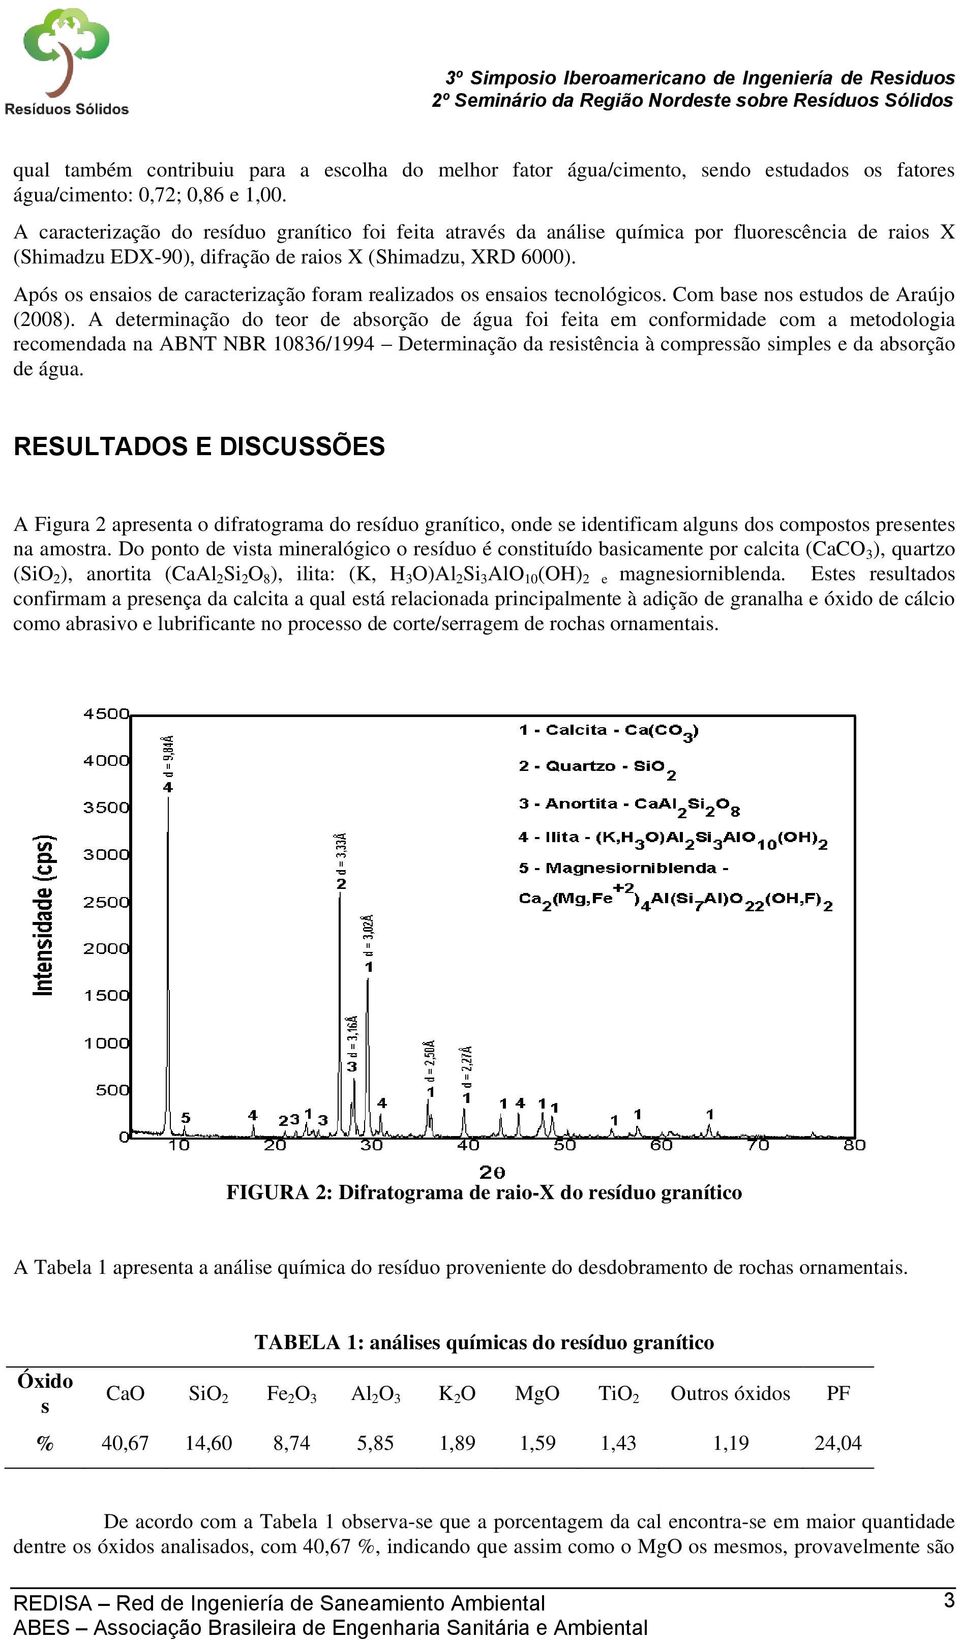 Após os ensaios de caracterização foram realizados os ensaios tecnológicos. Com base nos estudos de Araújo (2008).